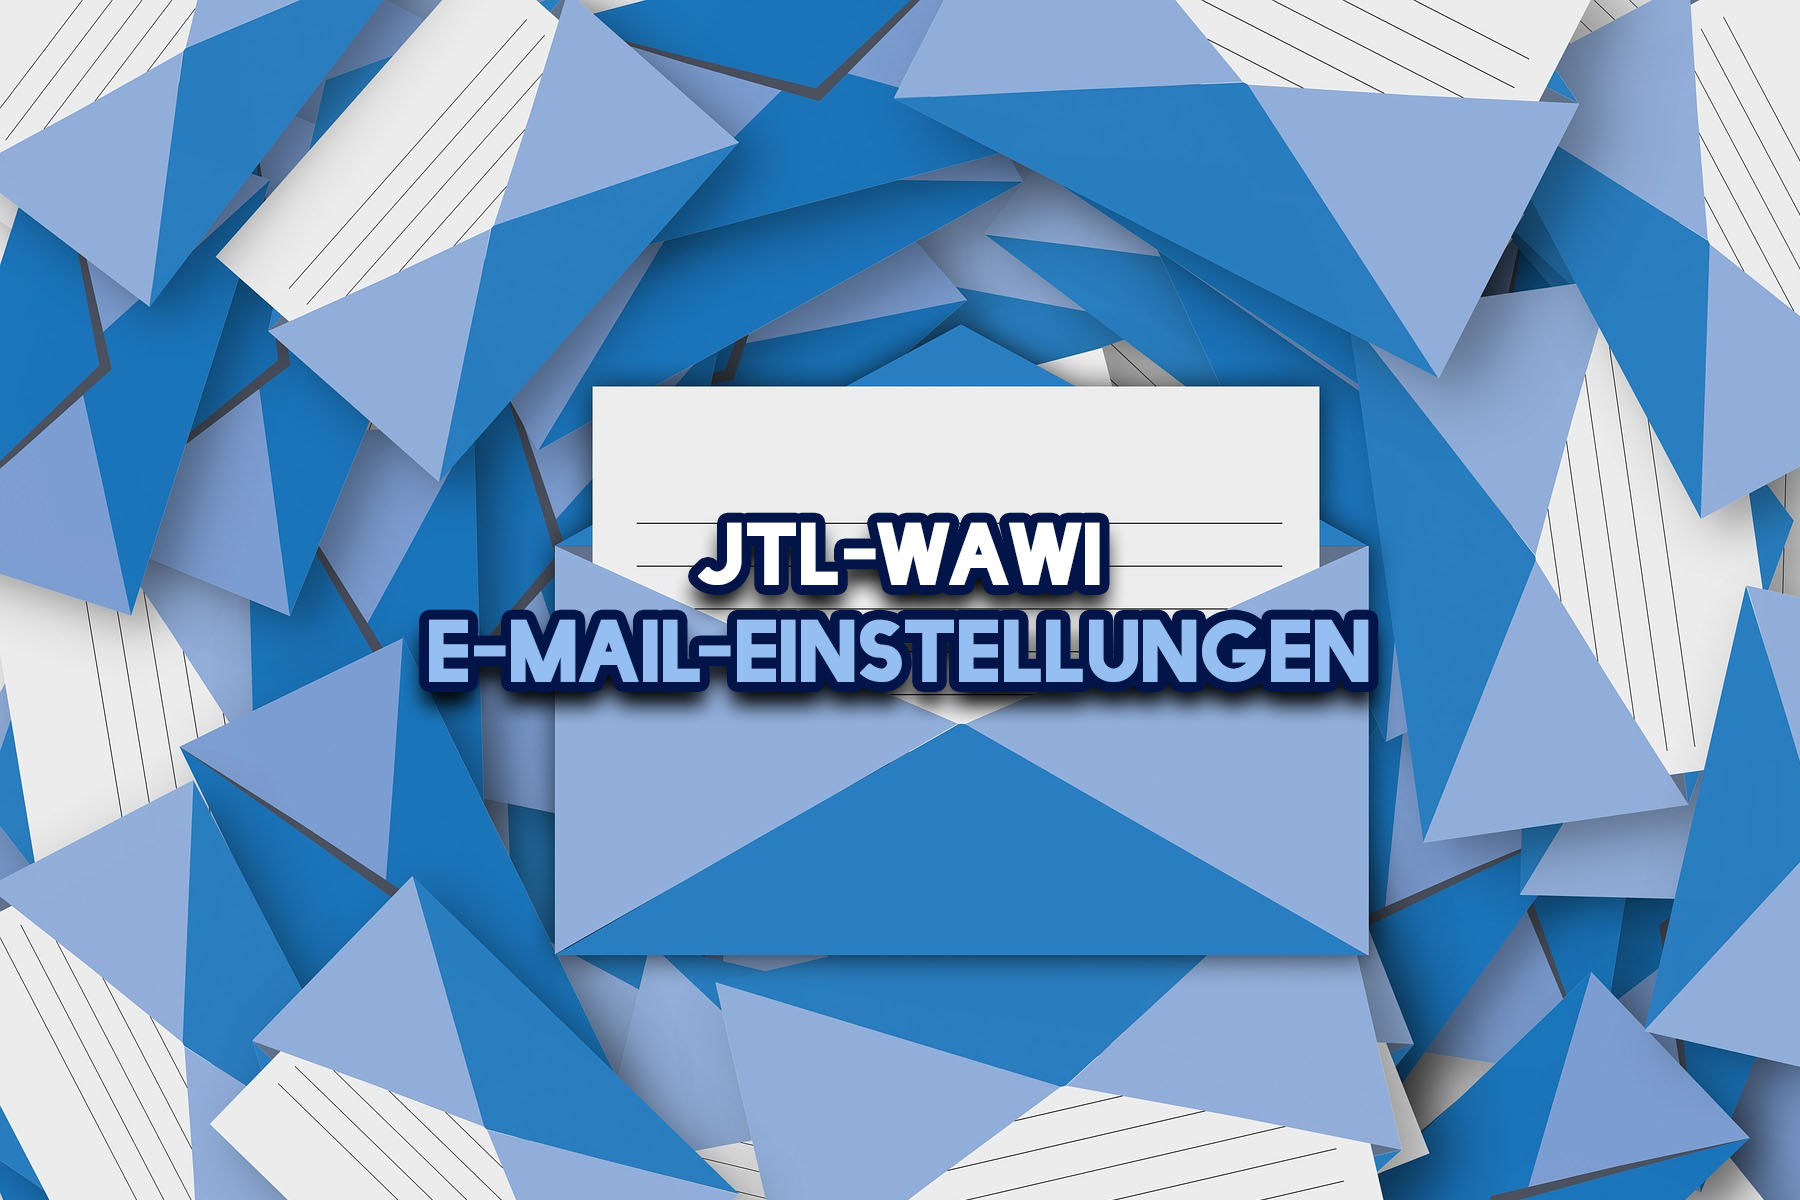 Definições do correio electrónico JTL-Wawi